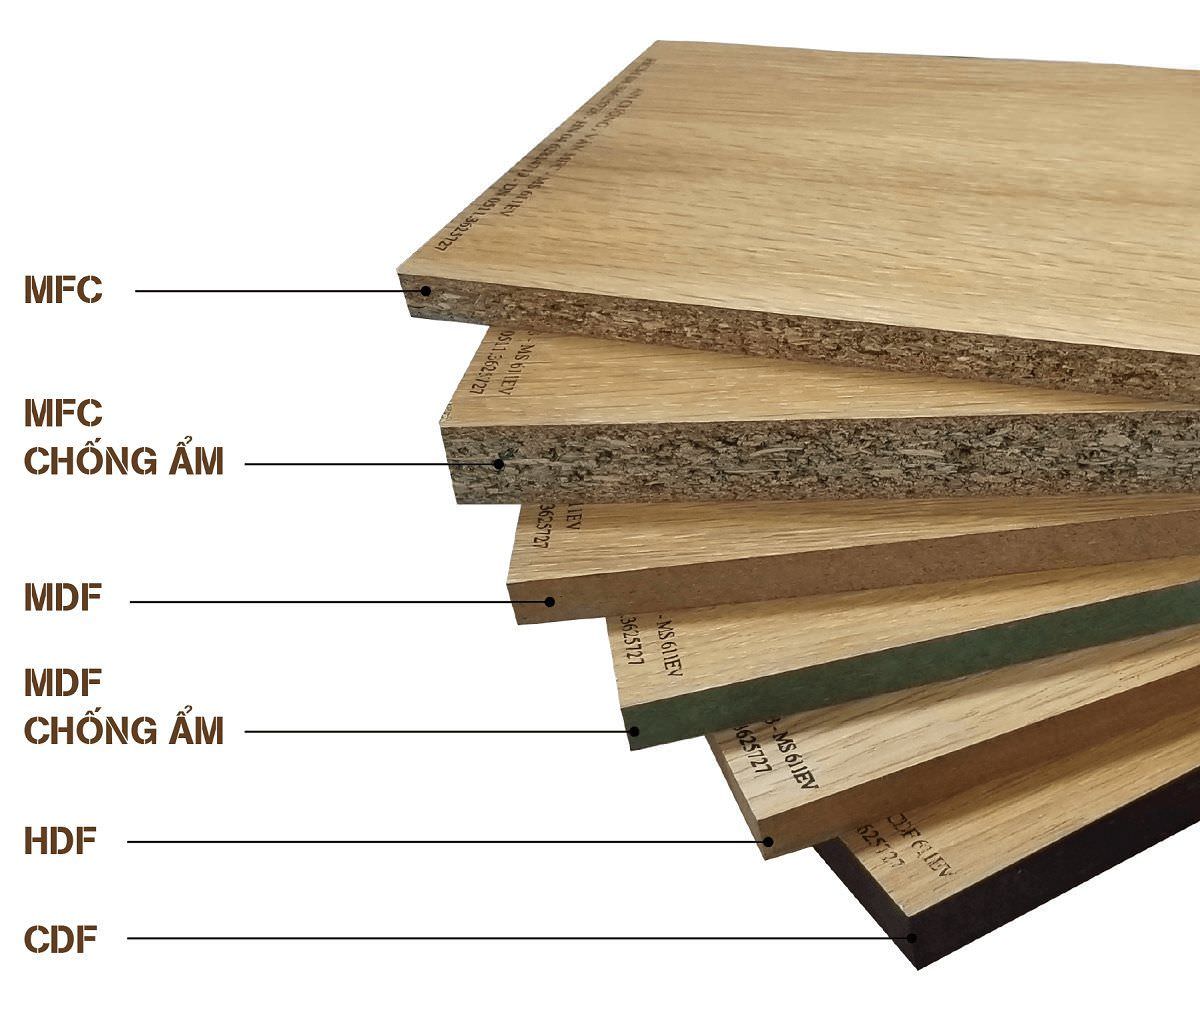 Gỗ công nghiệp là gì? Ứng dụng của gỗ công nghiệp trong thi công nội thất  1